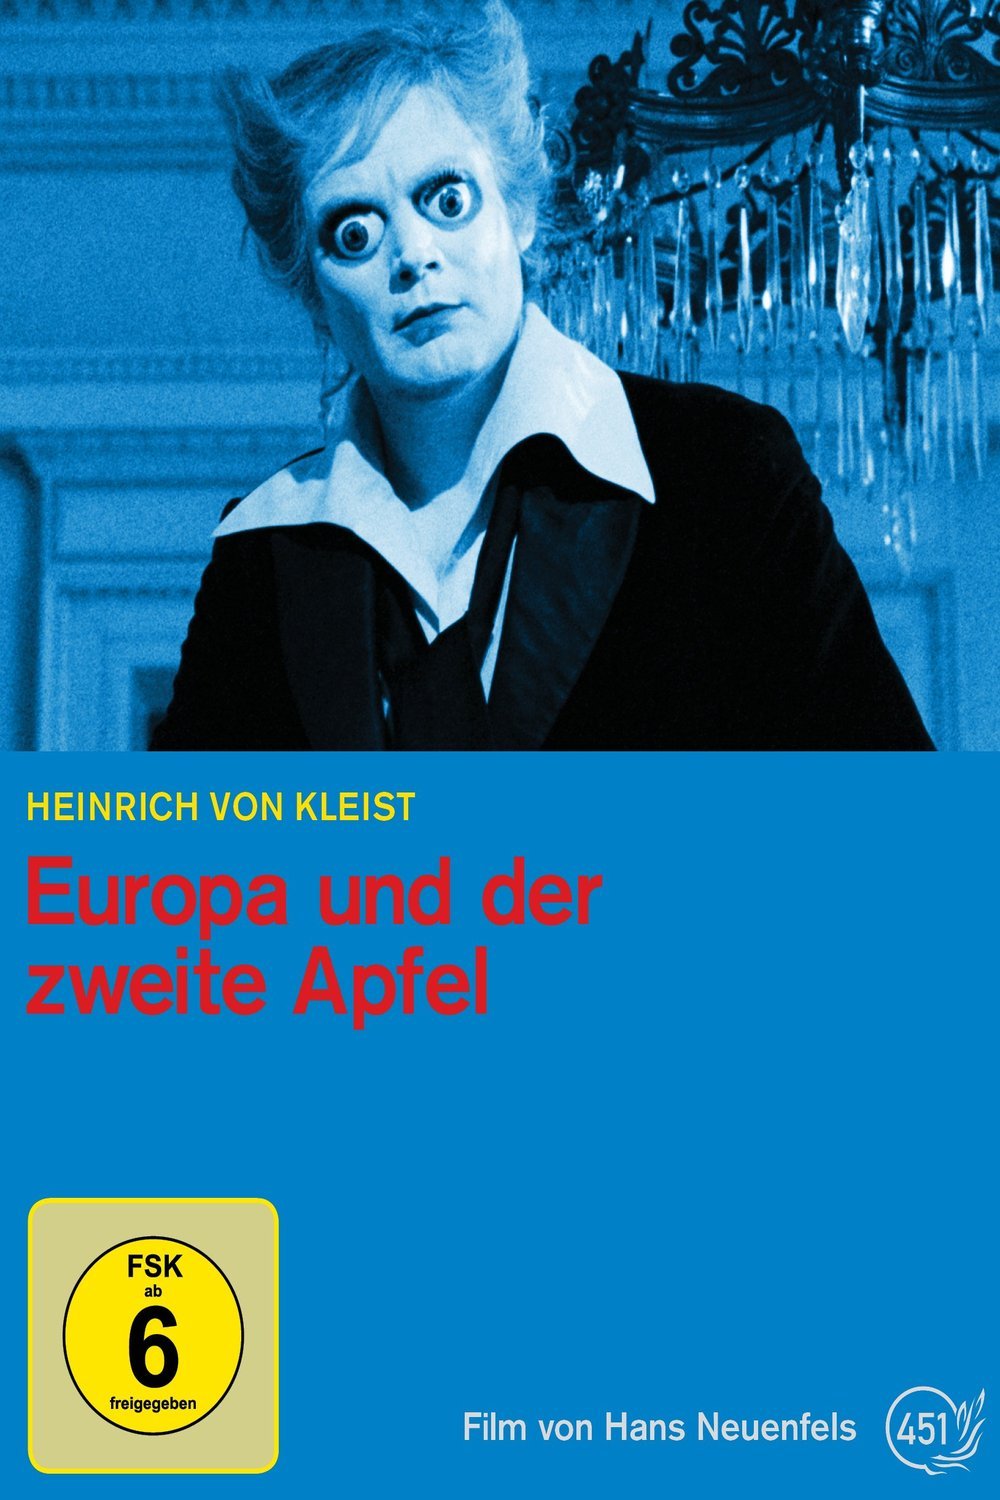 L'affiche originale du film Europa und der zweite Apfel en allemand